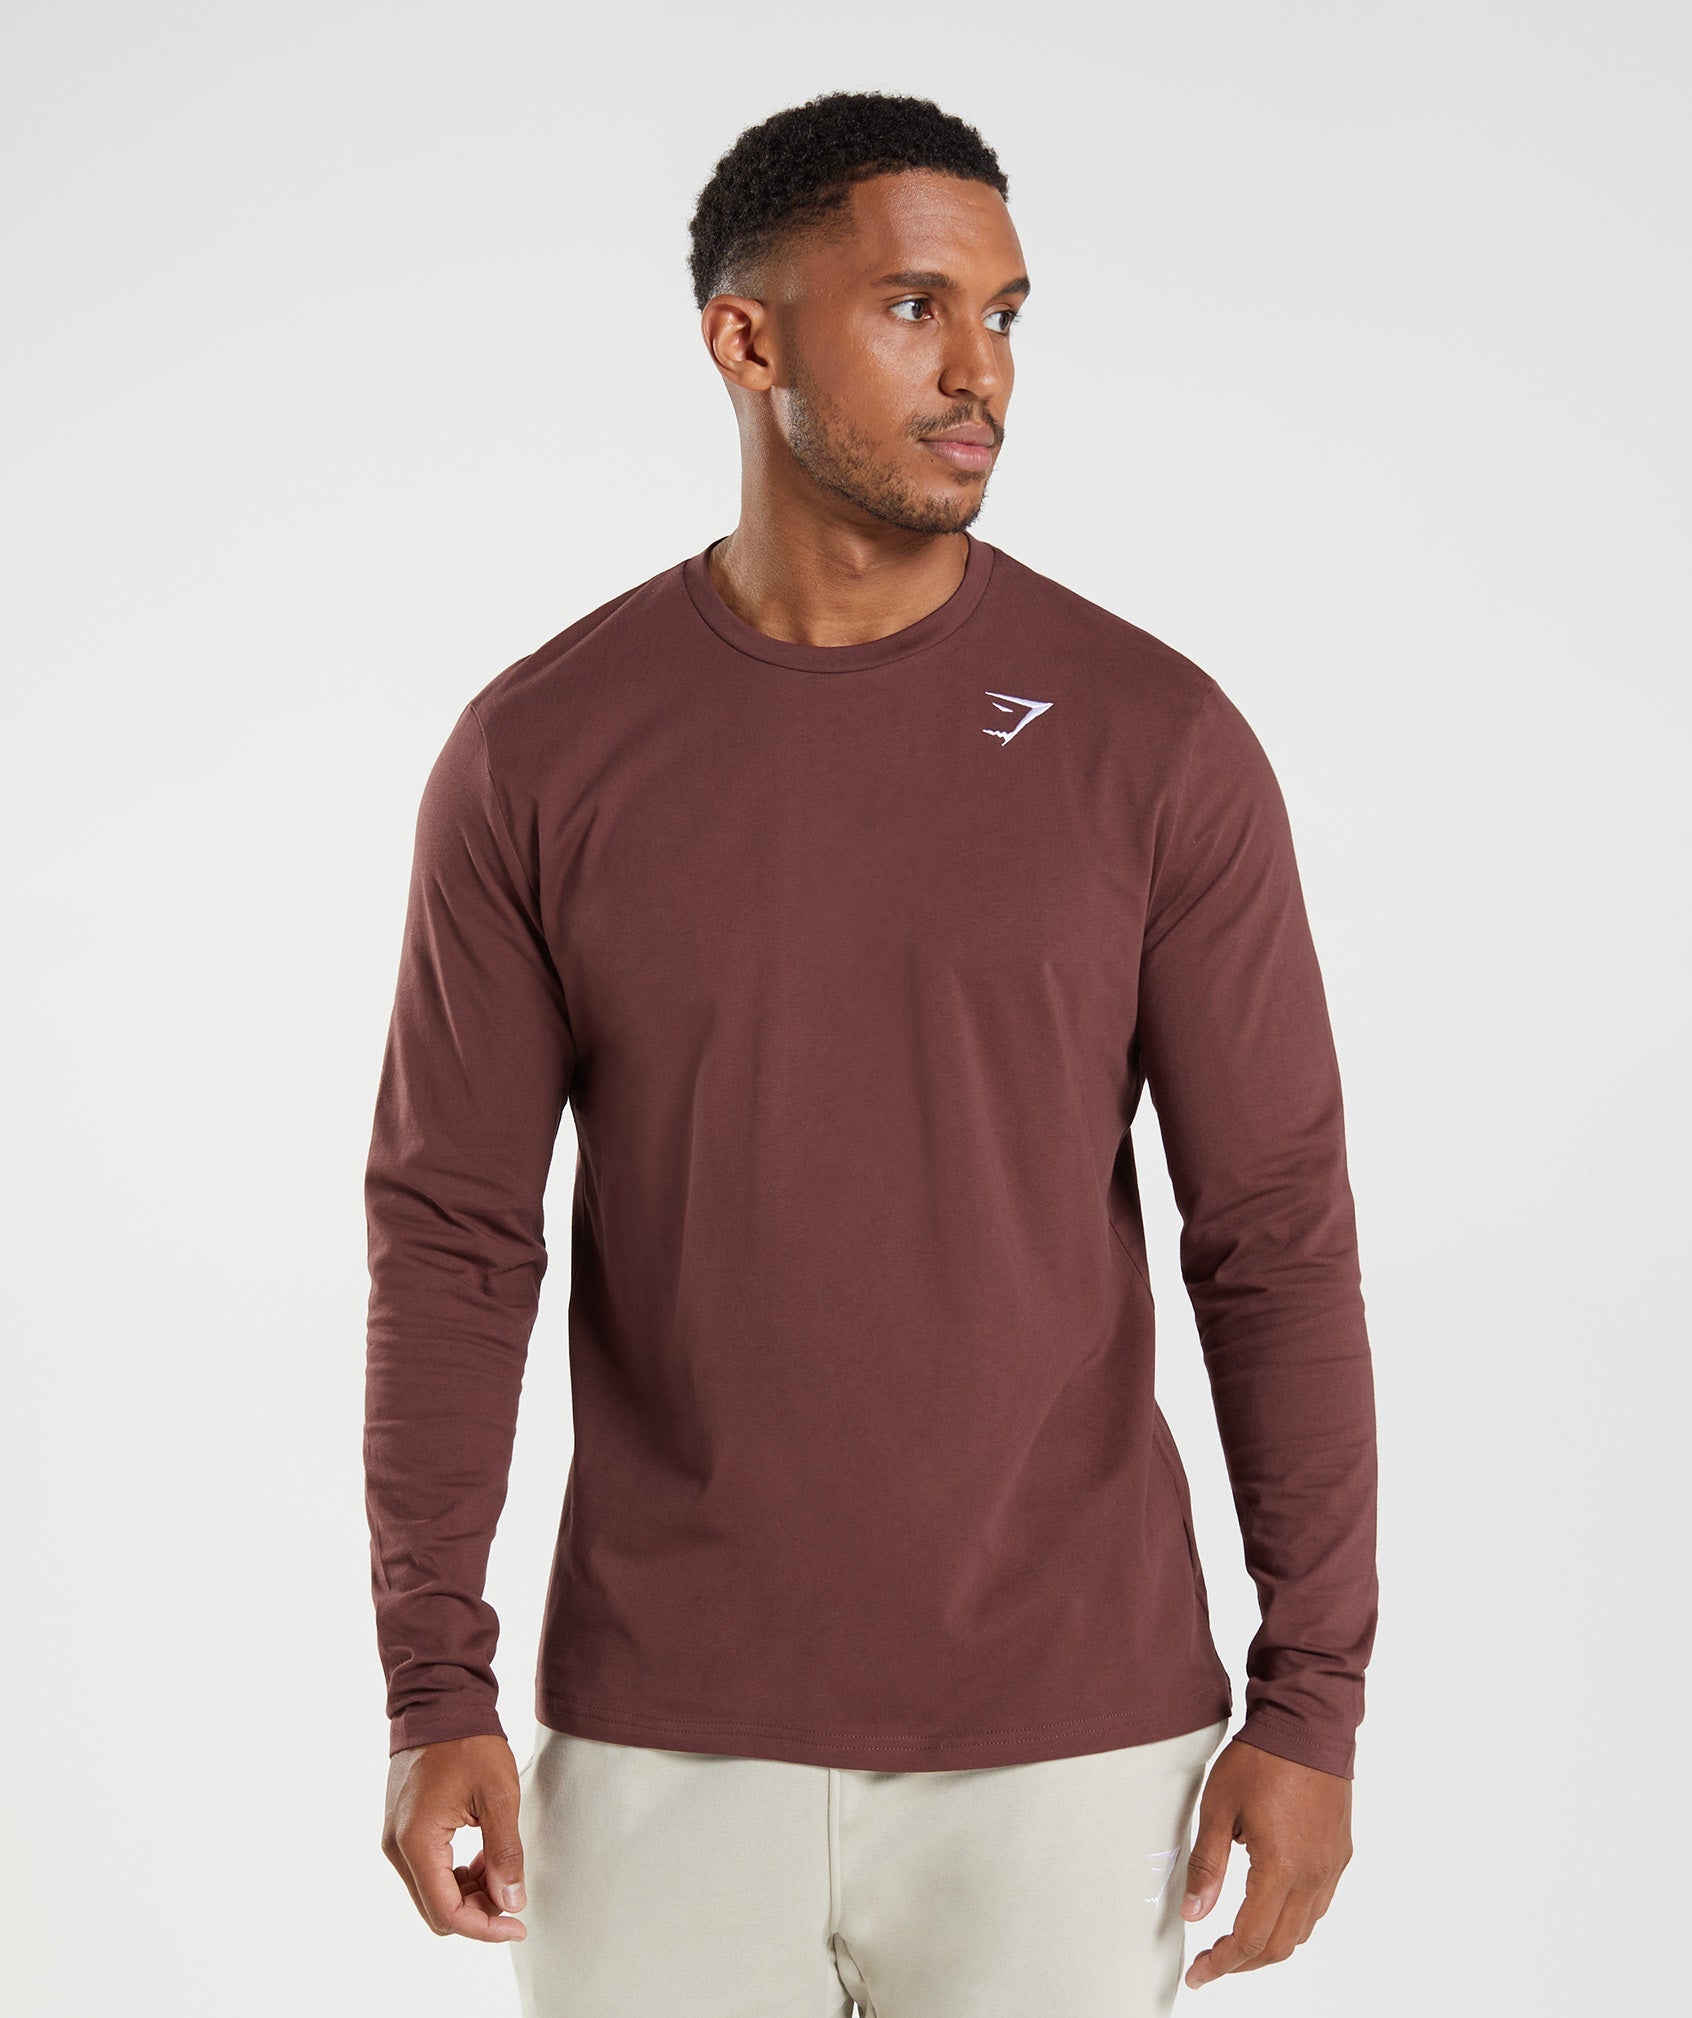 Gymshark Crest Long Sleeve T-Shirt - Cherry Brown